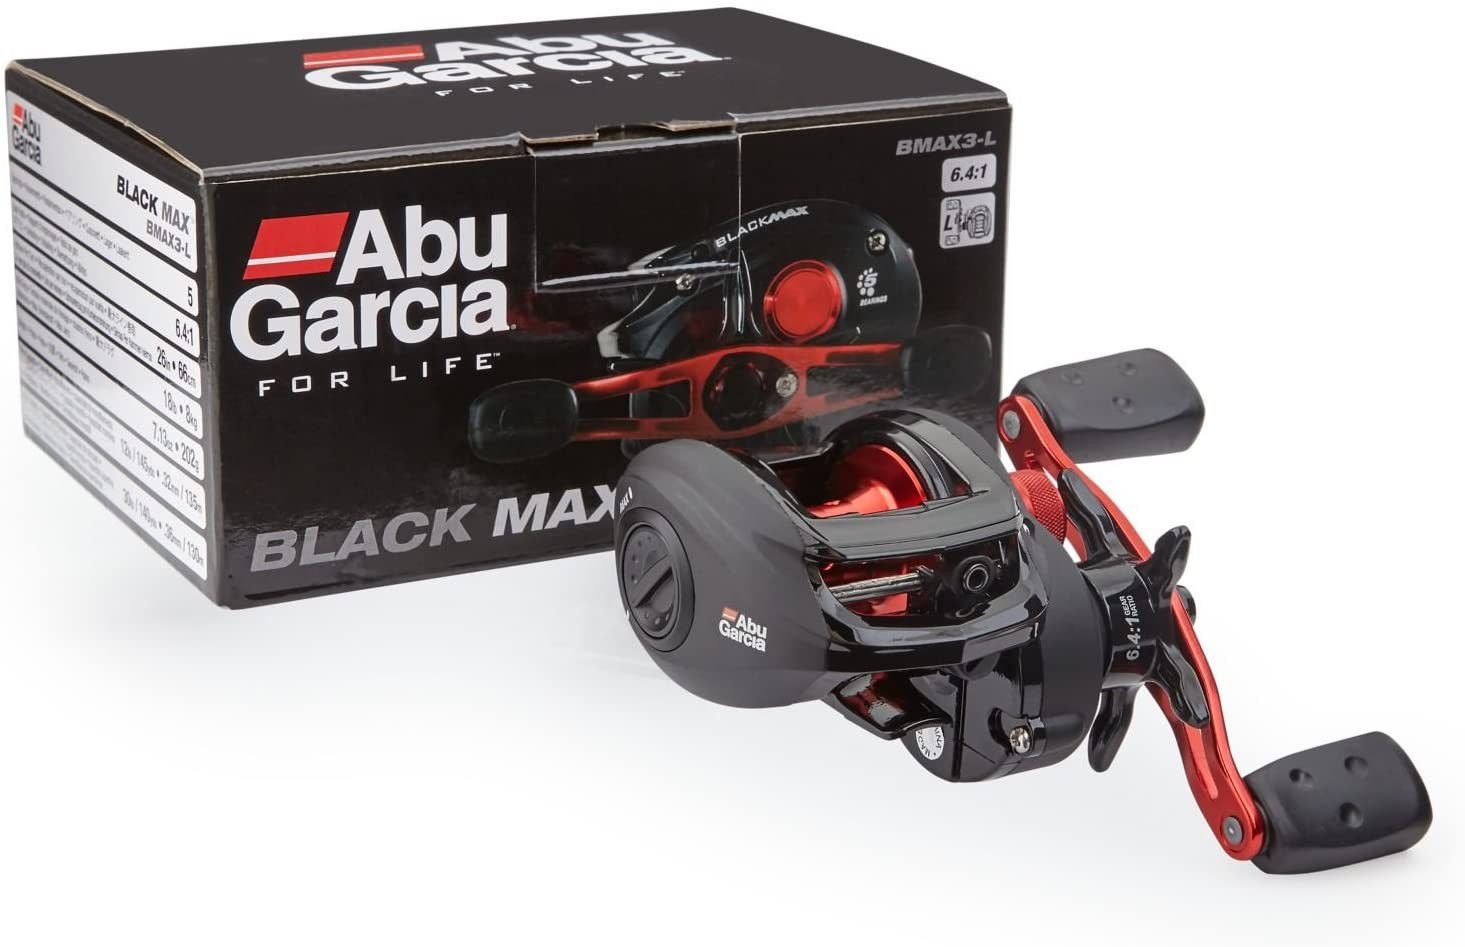 Abu Garcia Black Max Low Profile Baitcasting Fishing Reel